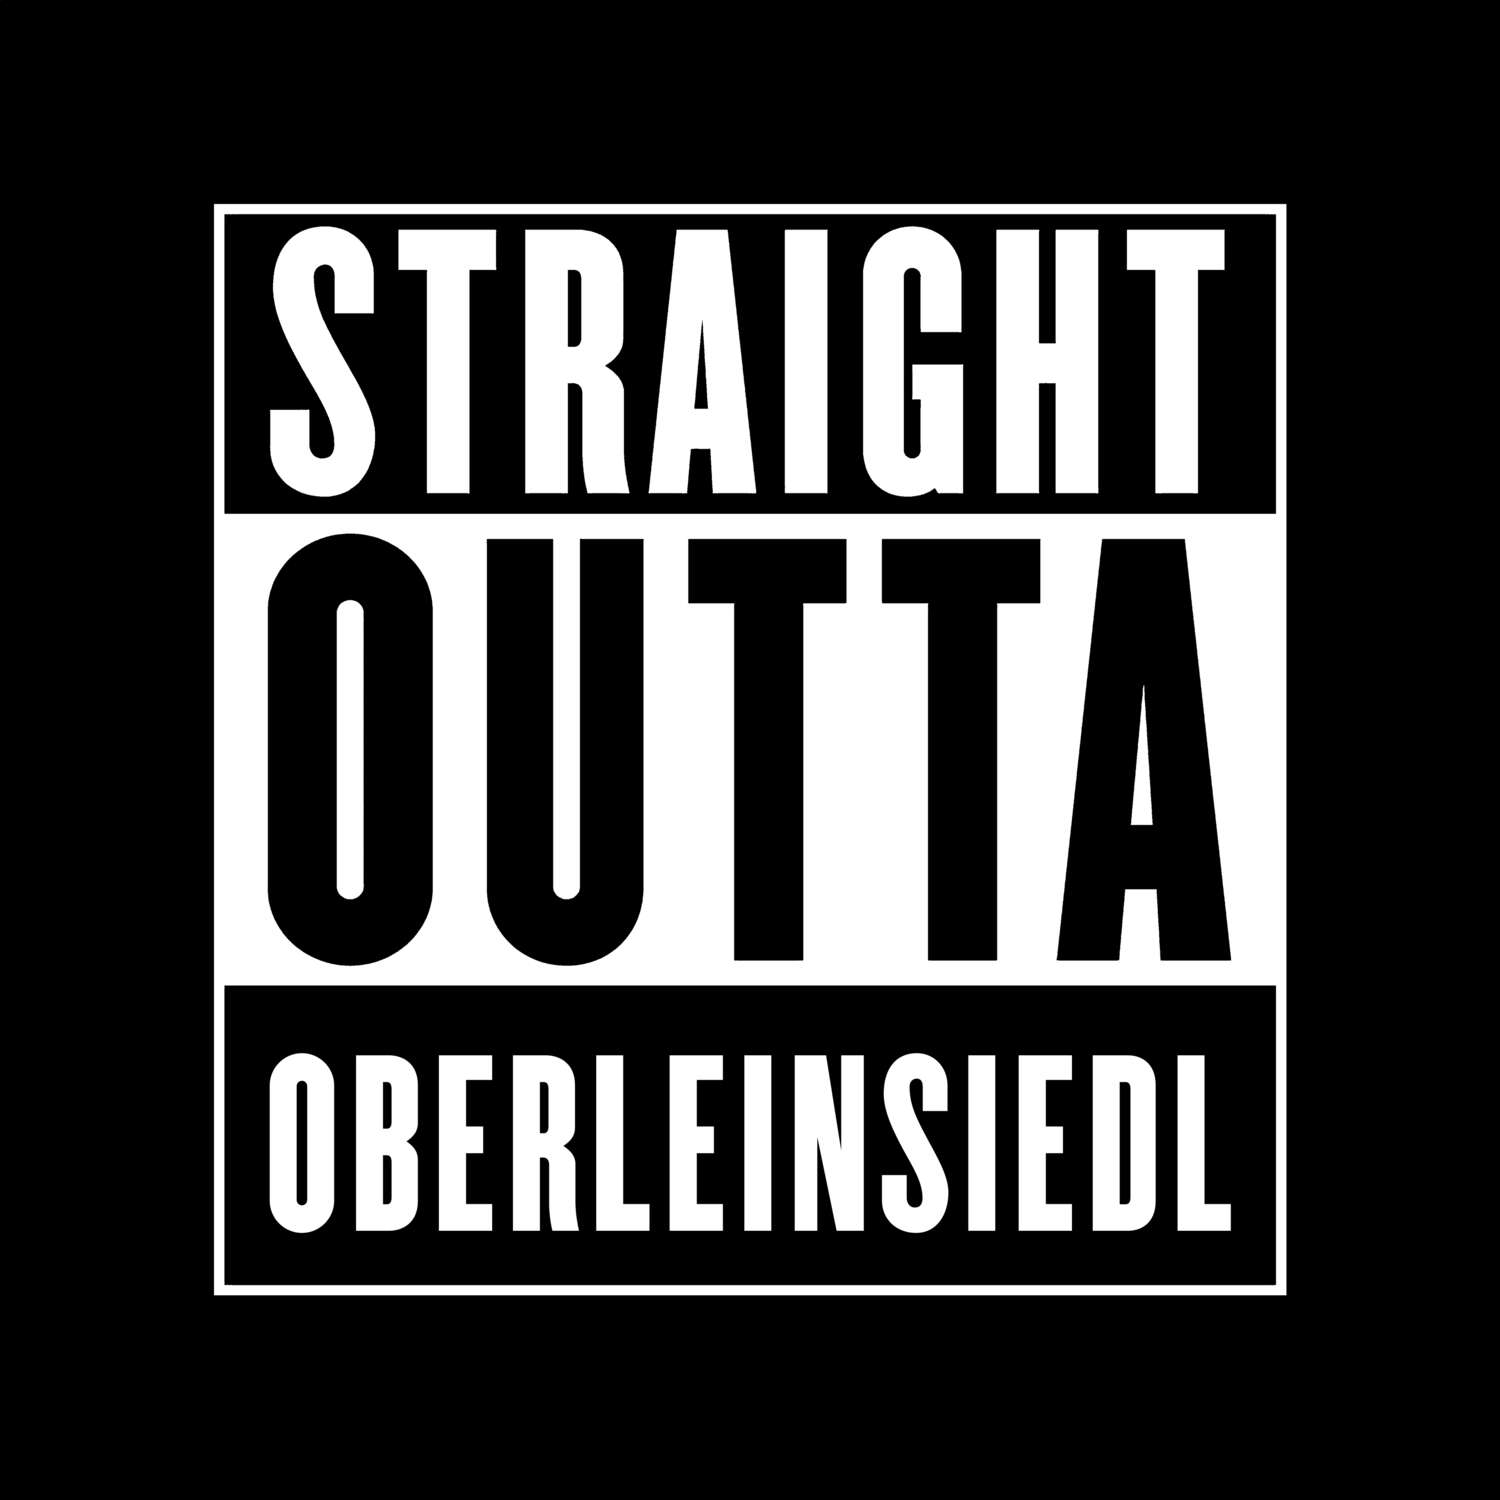 Oberleinsiedl T-Shirt »Straight Outta«